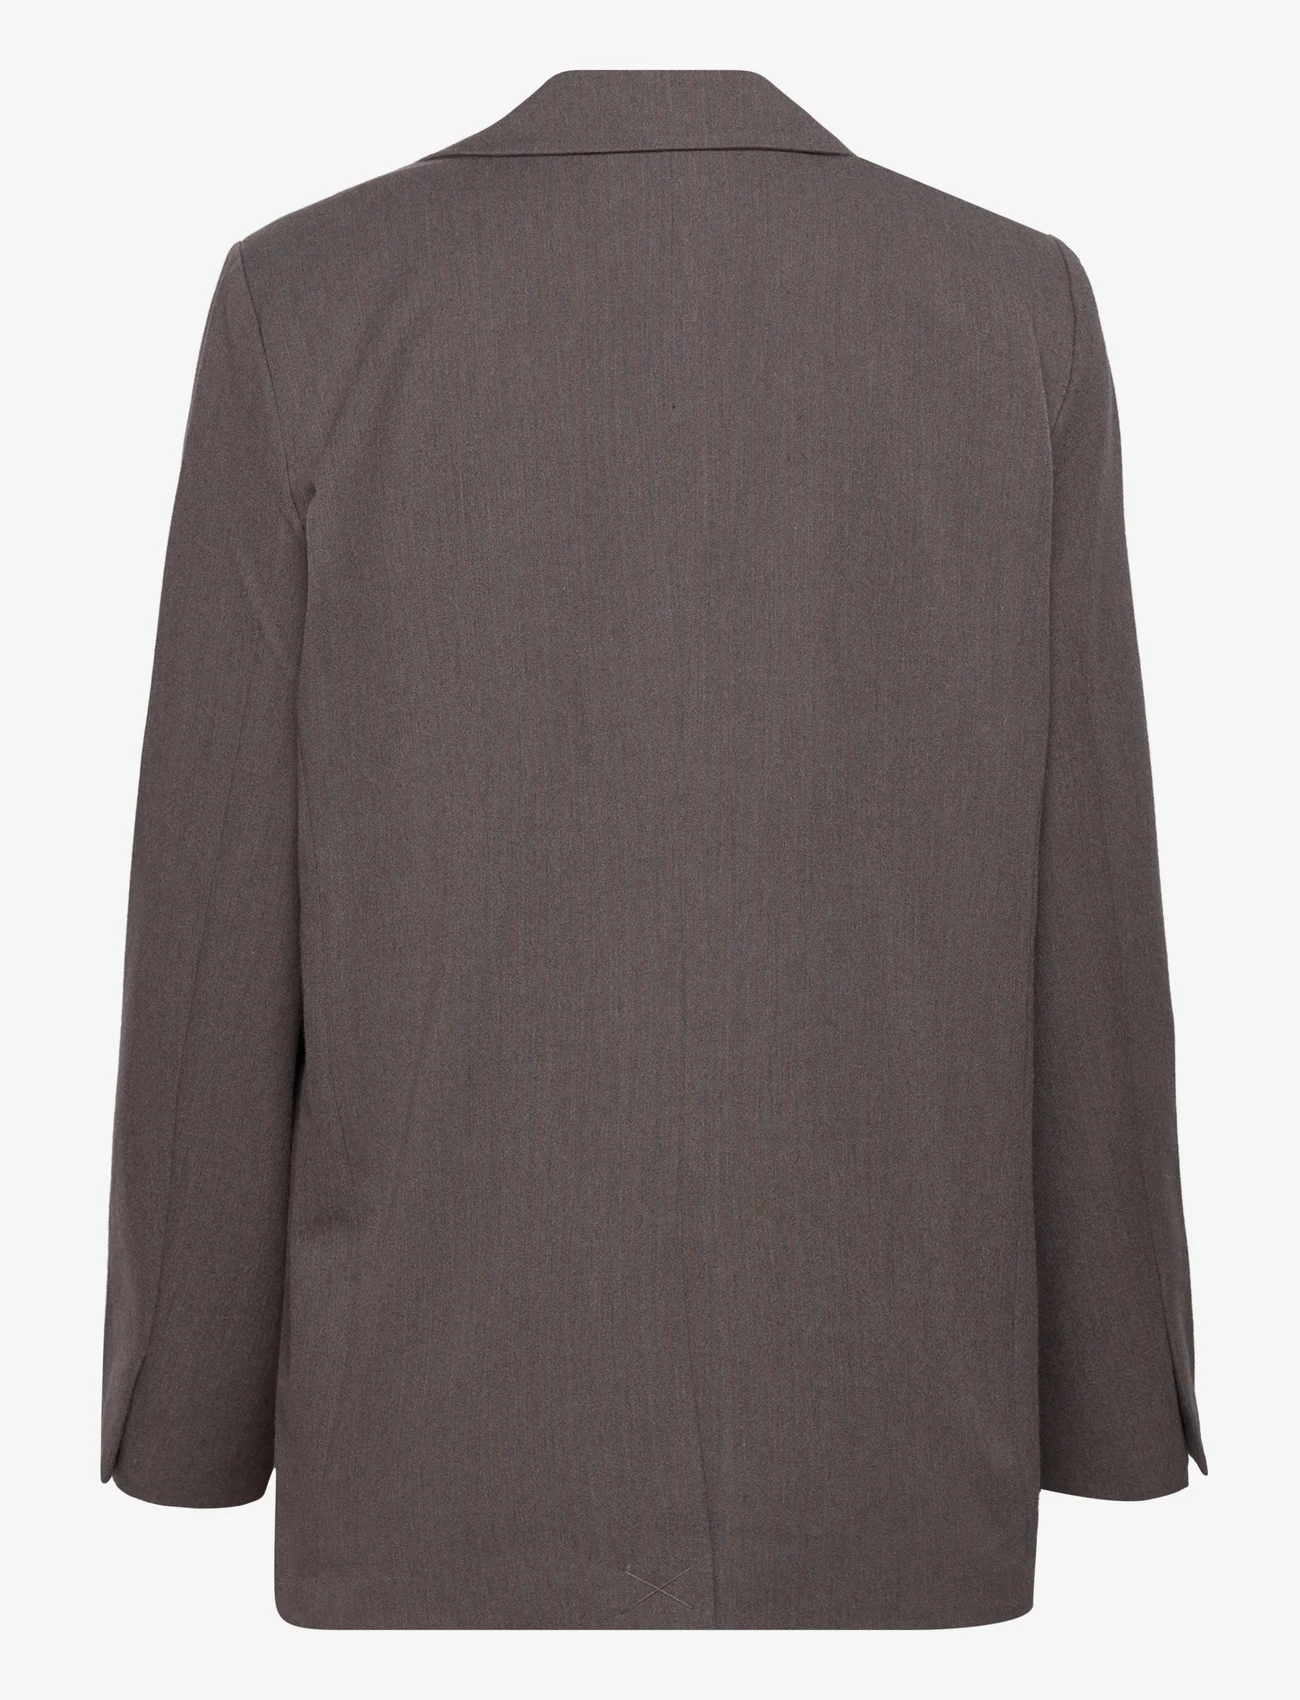 MSCH Copenhagen - MSCHDyanna Blazer STP - feestelijke kleding voor outlet-prijzen - dark brown stp - 1